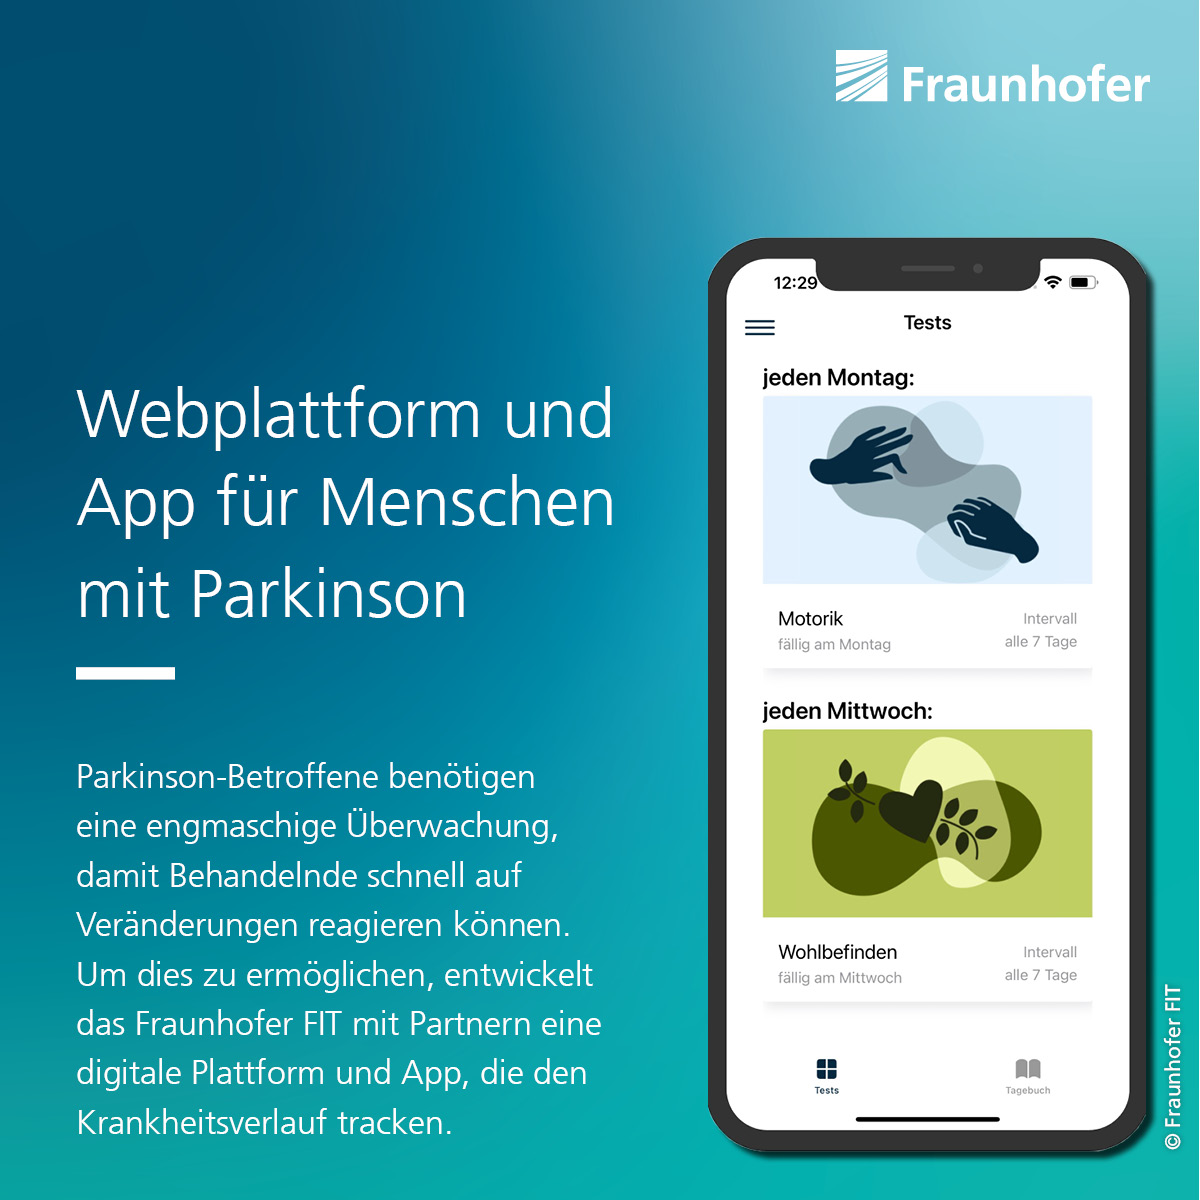 Parkinson-Betroffene benötigen eine engmaschige Überwachung, damit Behandelnde schnell auf Veränderungen reagieren können. Um dies zu ermöglichen, entwickelt das @Fraunhofer_FIT & Partner eine digitale Plattform und App, die den Krankheitsverlauf tracken. s.fhg.de/f44